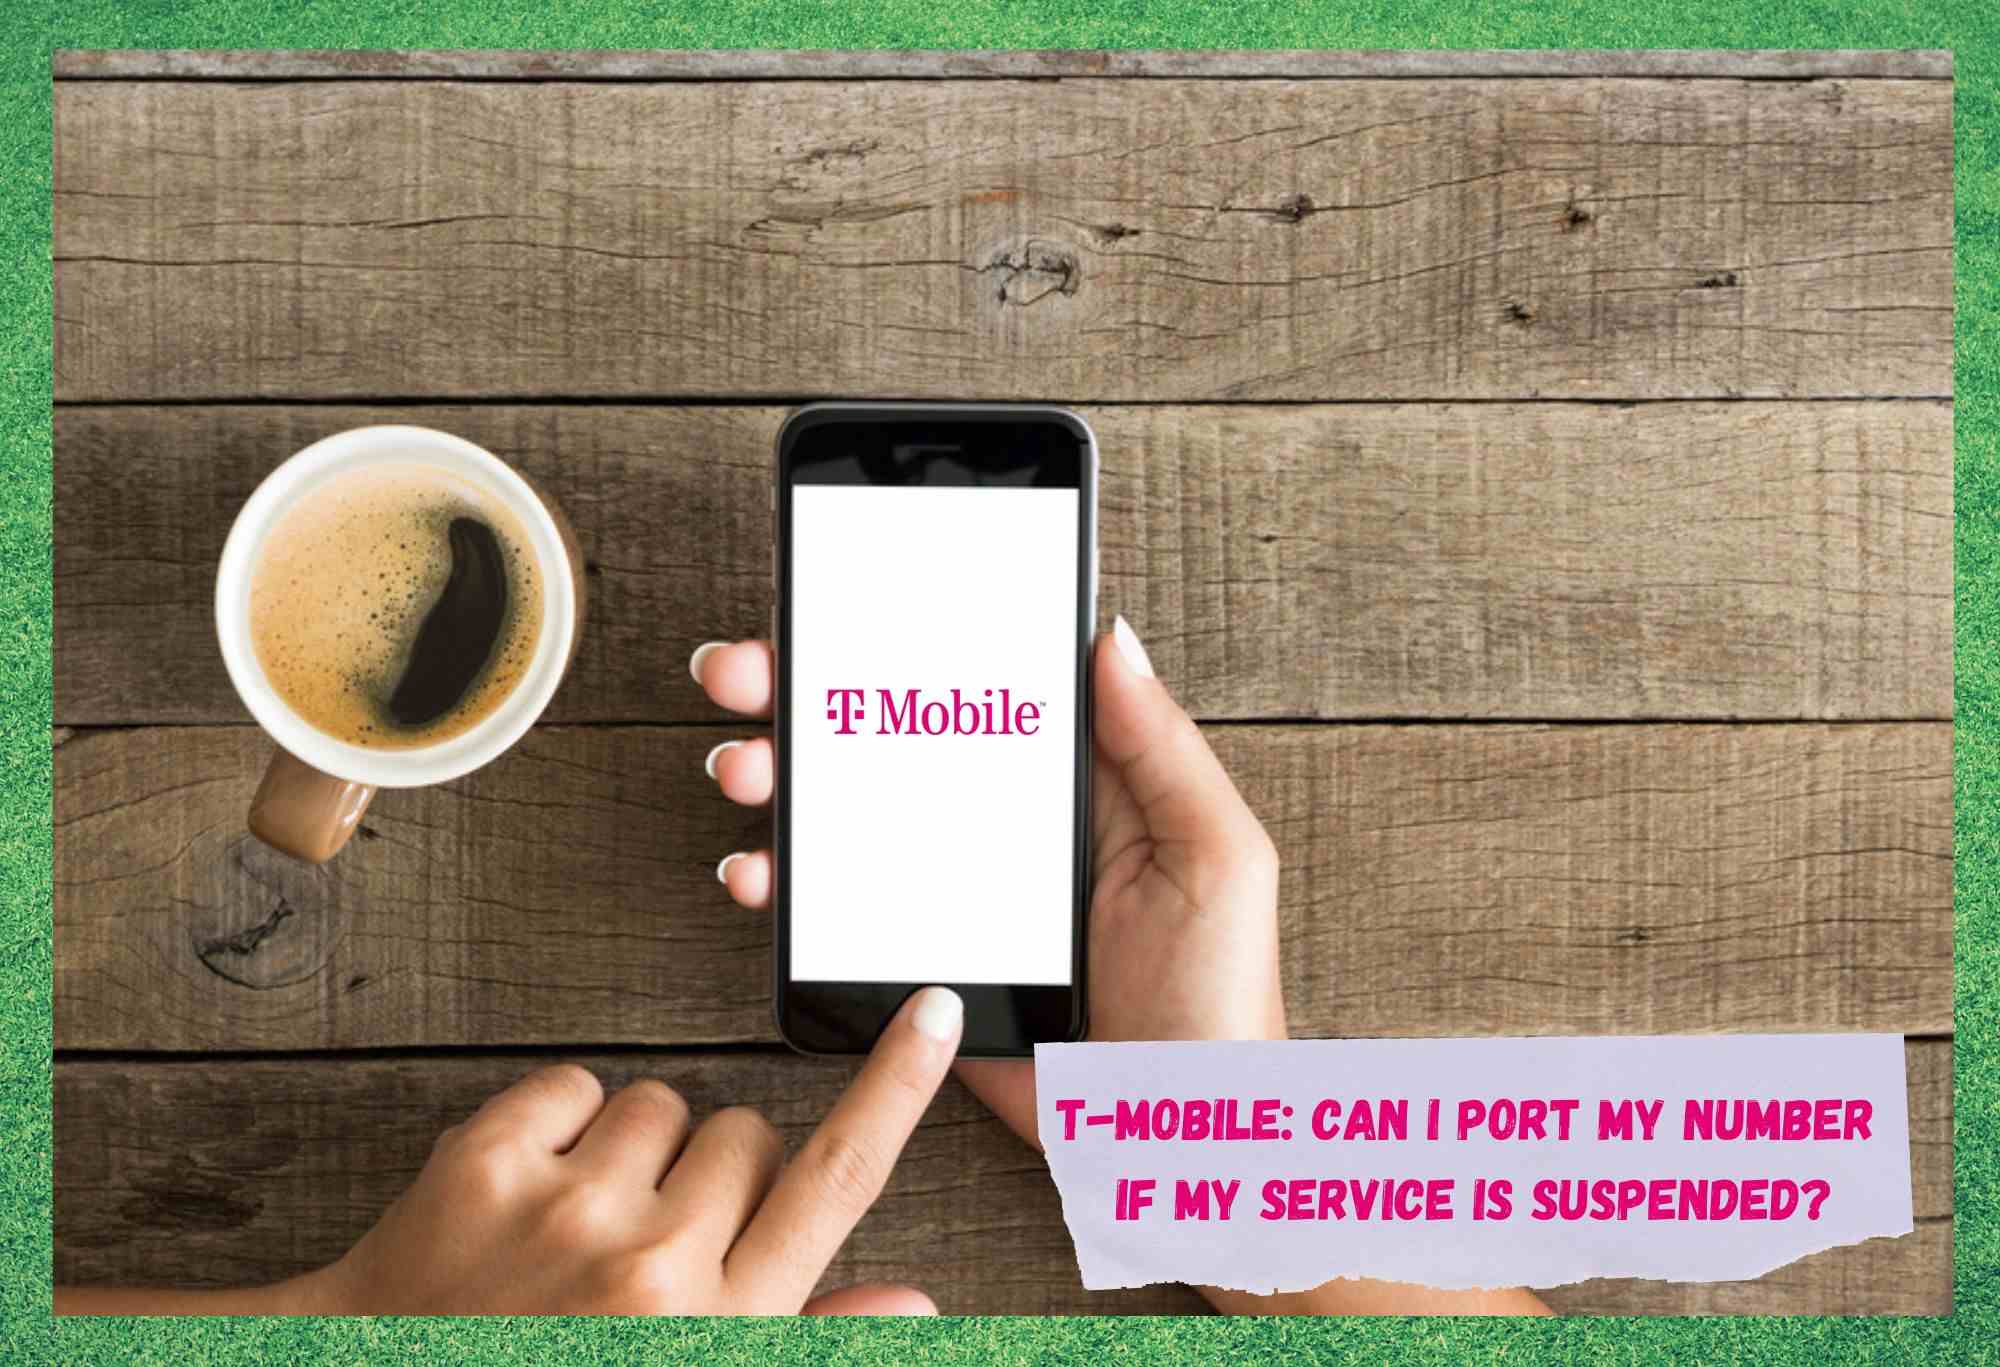 T-Mobile: Portatu al dezaket nire zenbakia nire zerbitzua eteten bada?